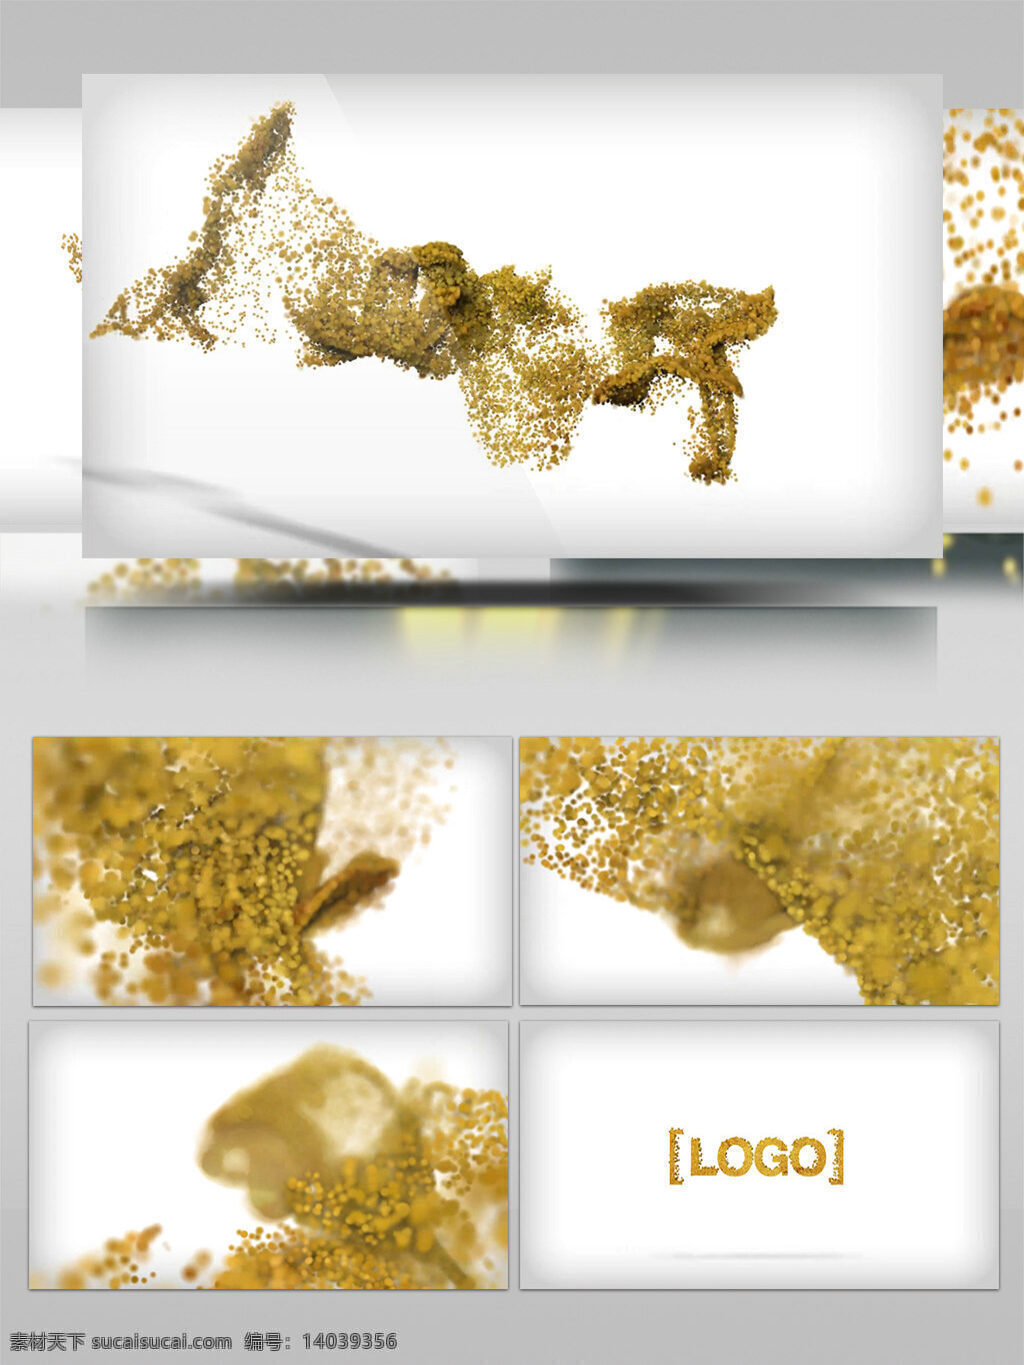 年终 总结 开场 金色 花瓣 粒子 汇聚 logo 演绎 logo演绎 年终总结 总结开场 金色花瓣 花瓣粒子 粒子汇聚 金色粒子